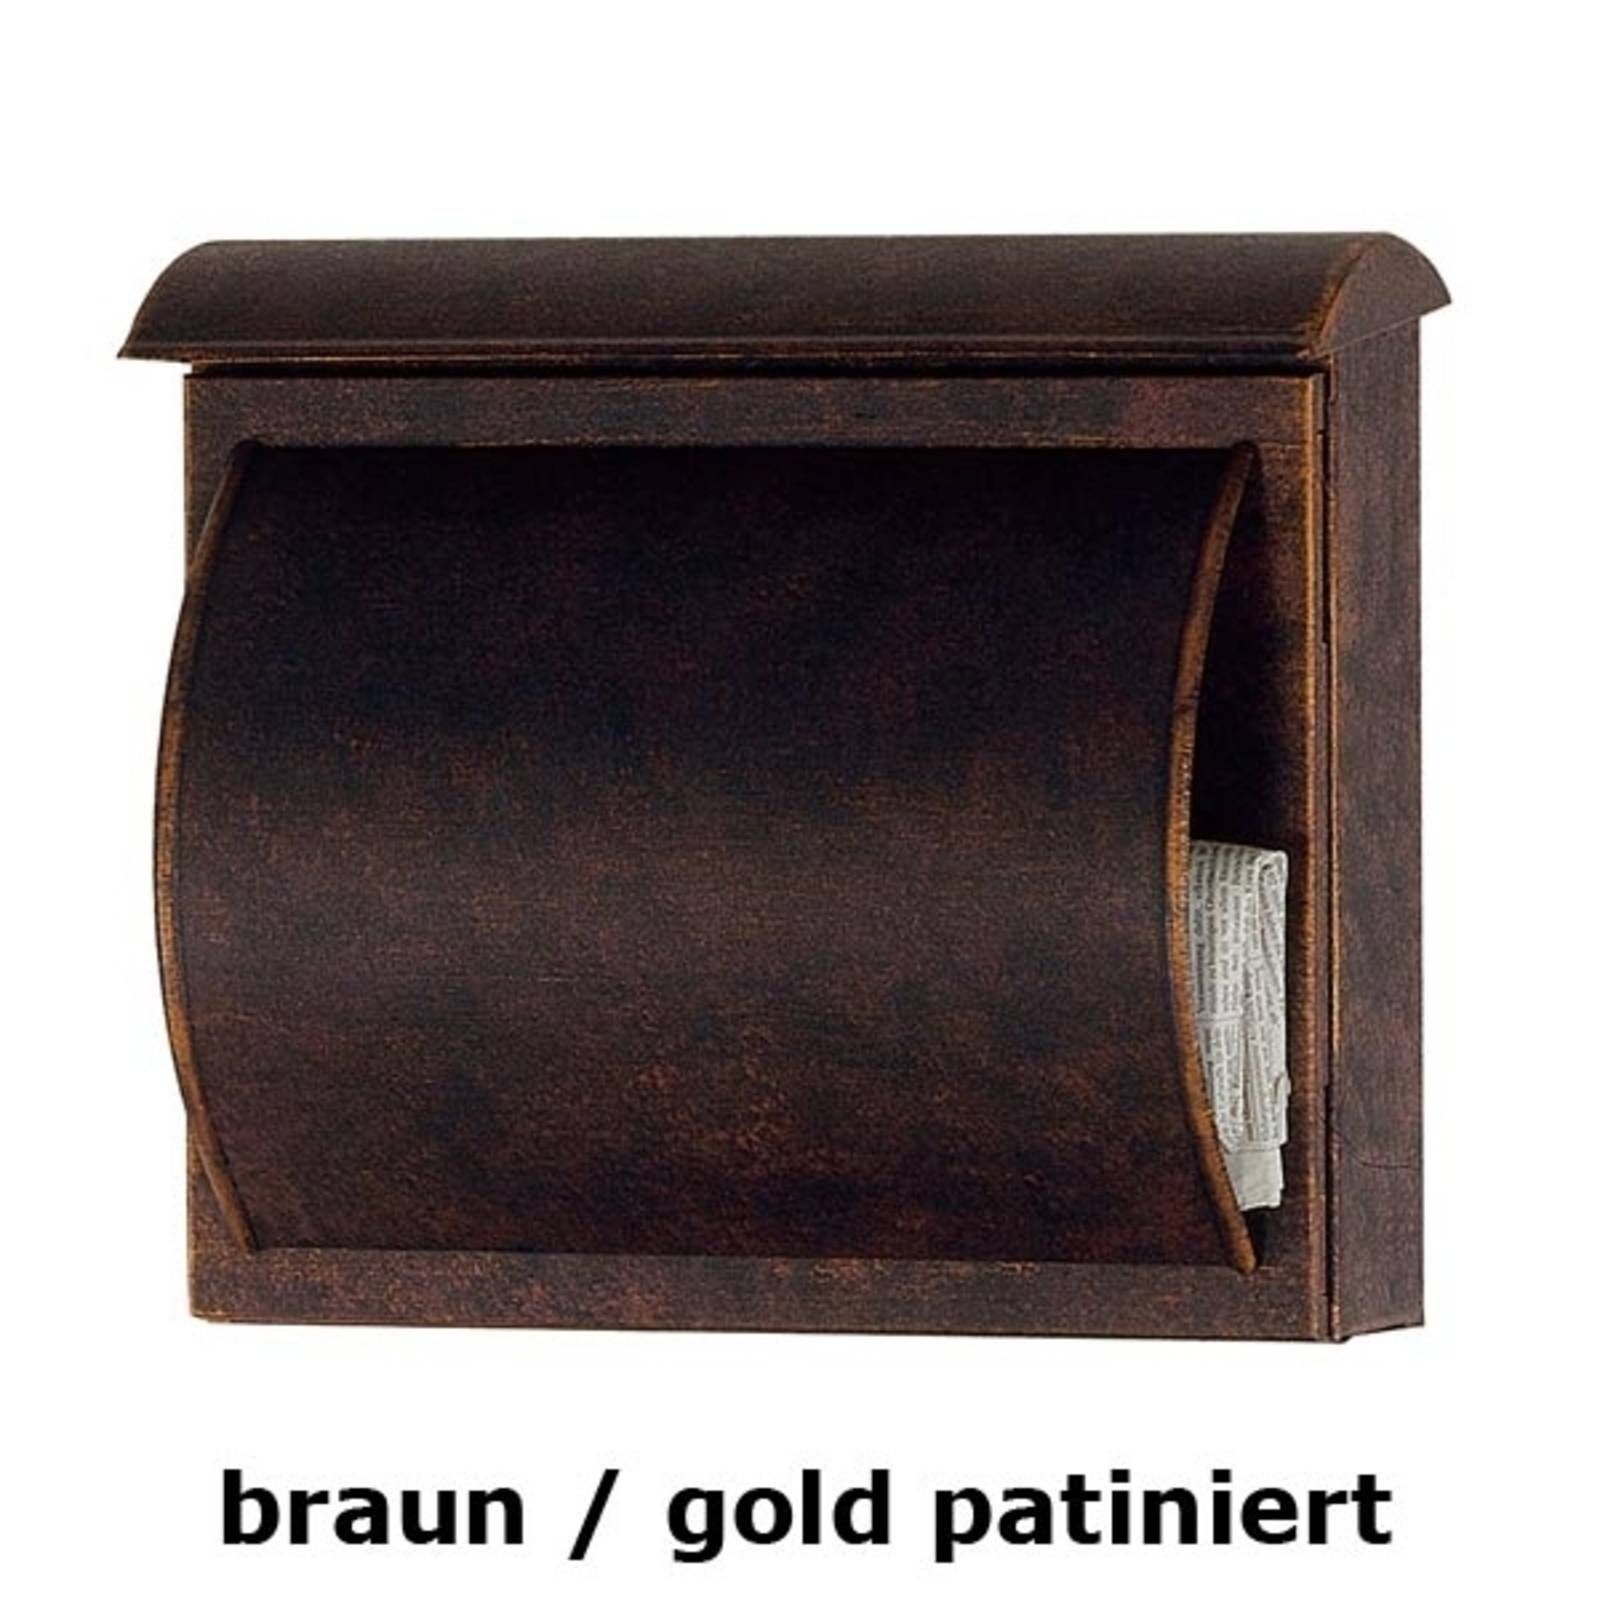 Briefkasten TORES braun / gold patiniert von Heibi